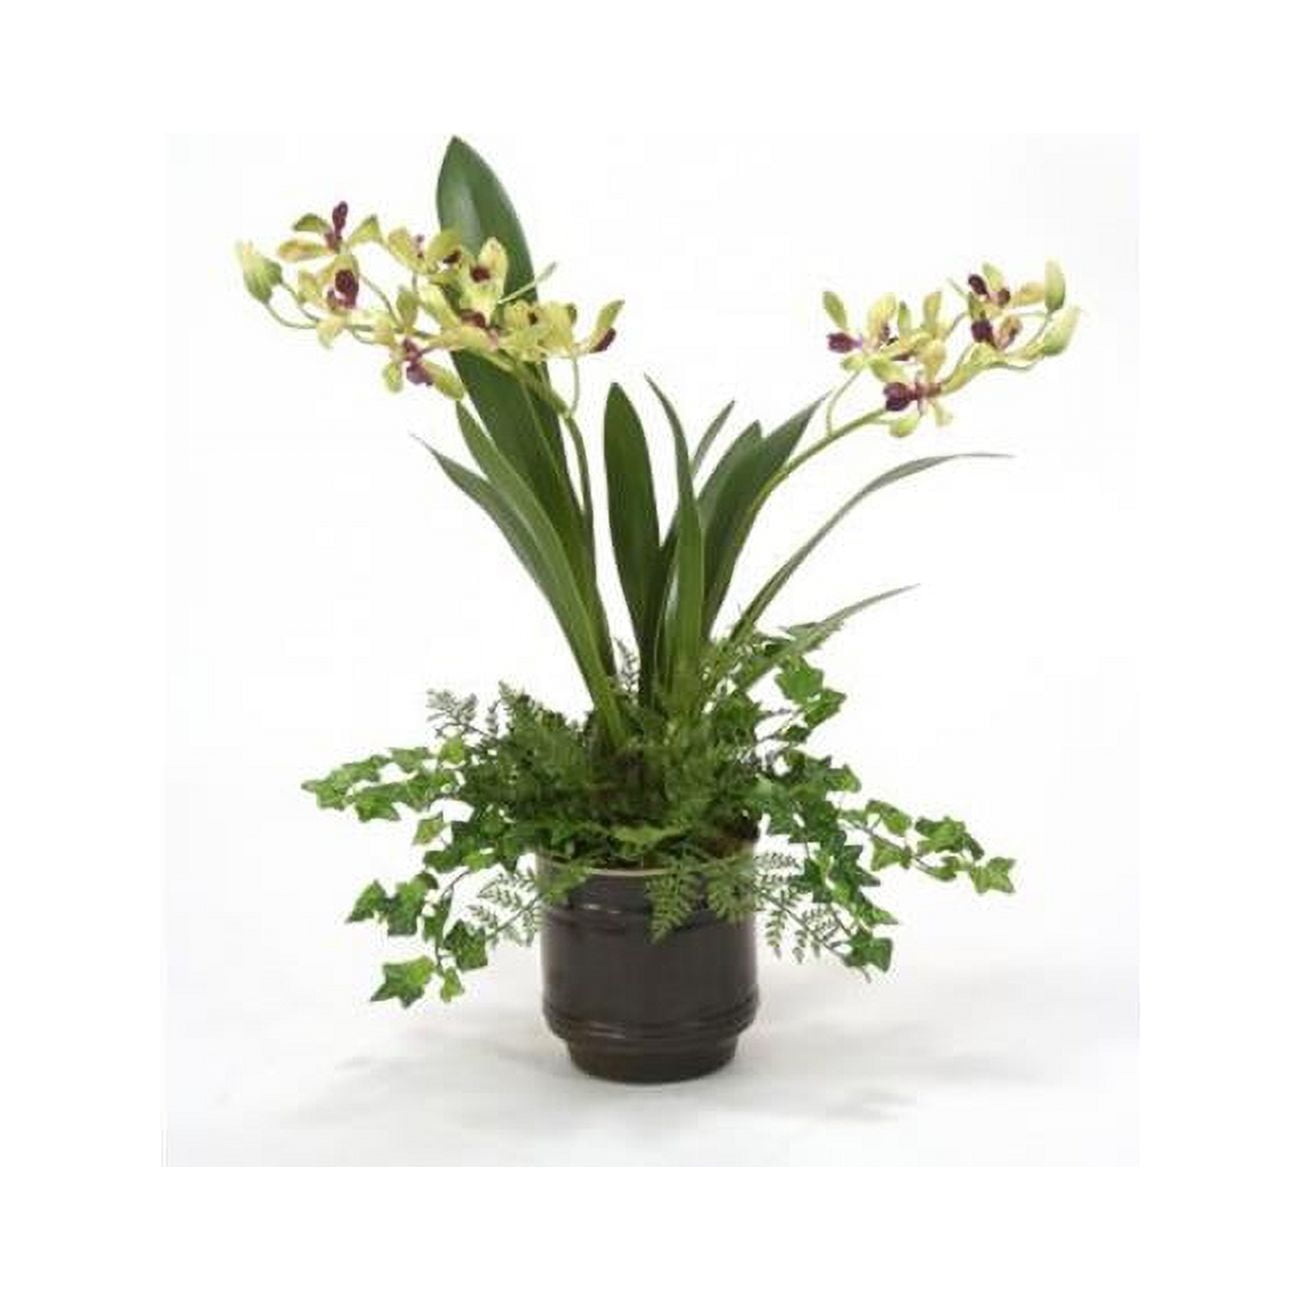 Distinctive Designs 9931 Vanda Orchid in Dark Bronze Pot, Green